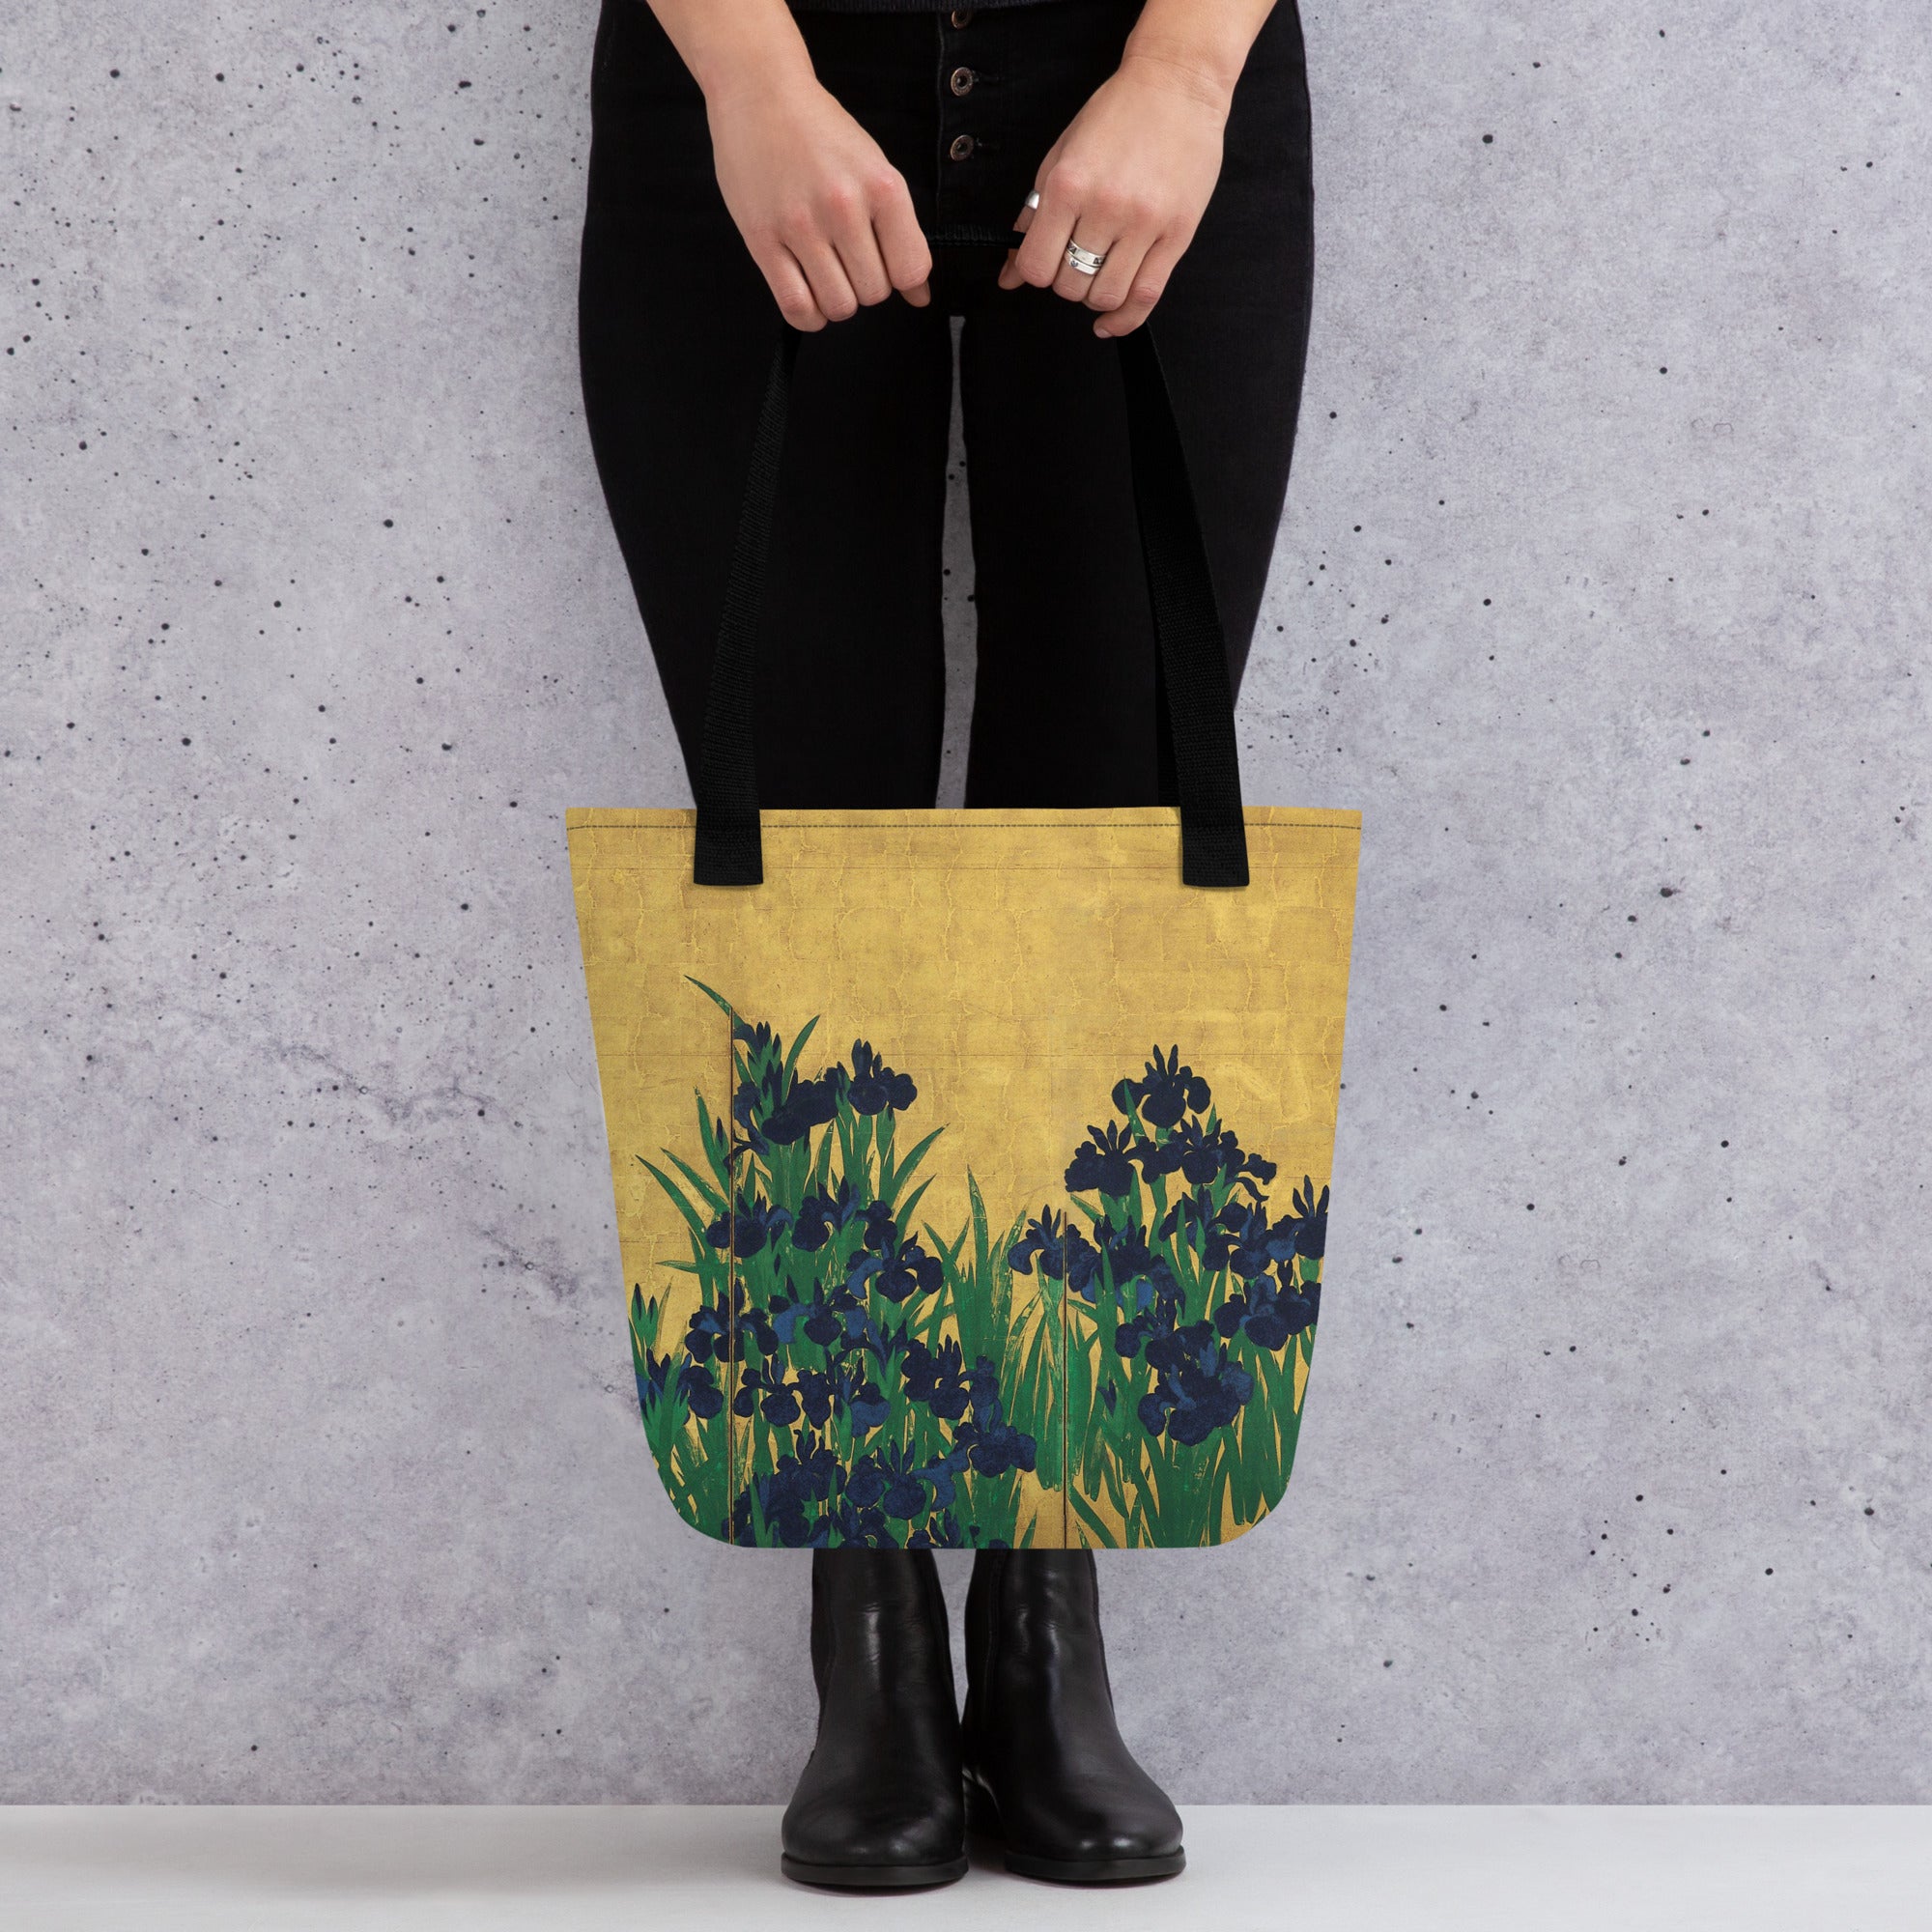 Ogata Kōrin ‘Irises’ Famous Painting Totebag | Allover Print Art Tote Bag